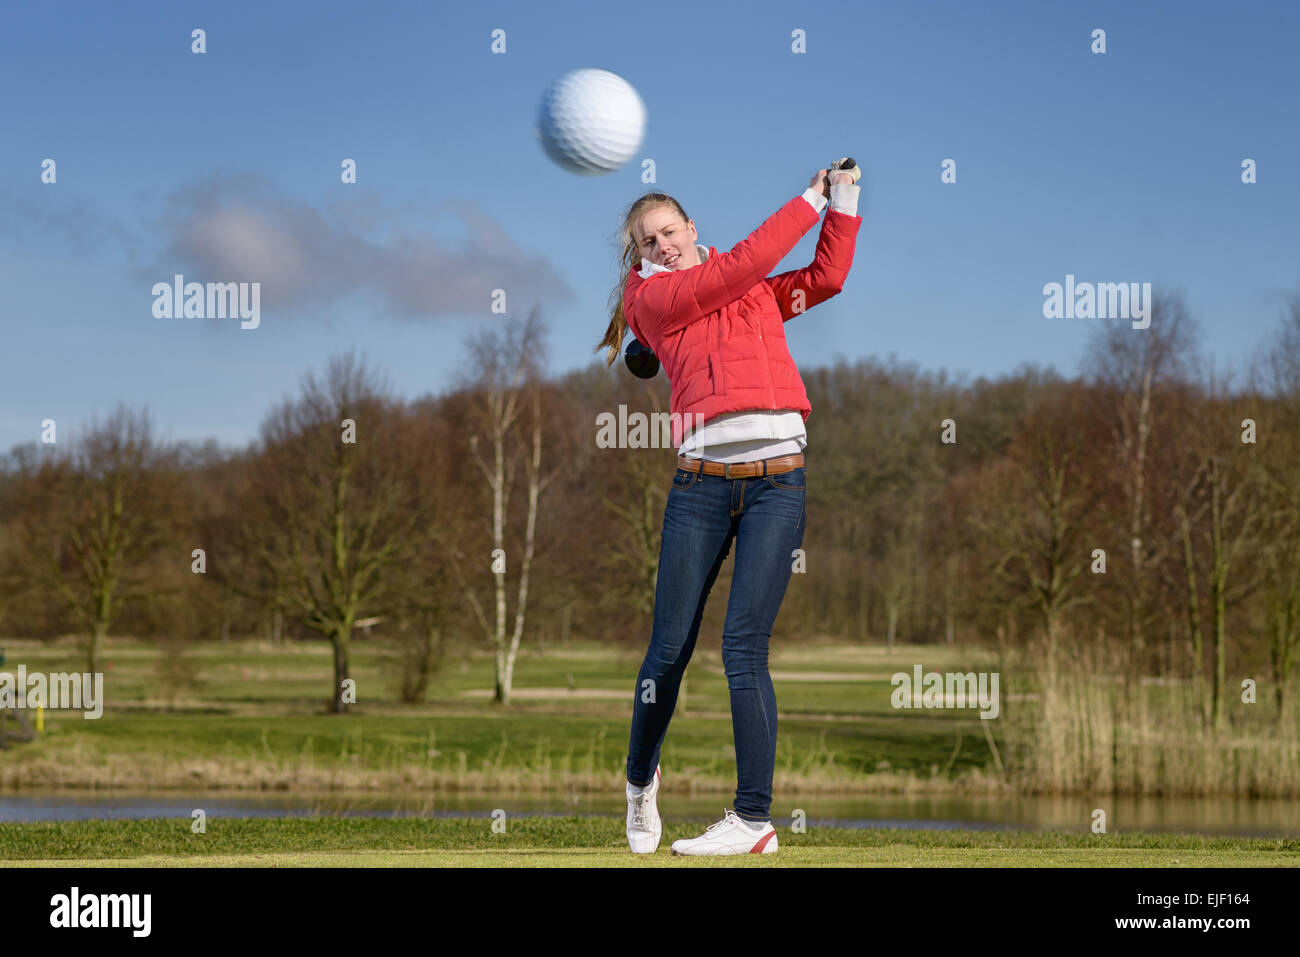 Donna golfista colpire la pallina da golf con un autista di fronte a un pericolo in acqua su un campo da golf con la sfera volare in aria Foto Stock